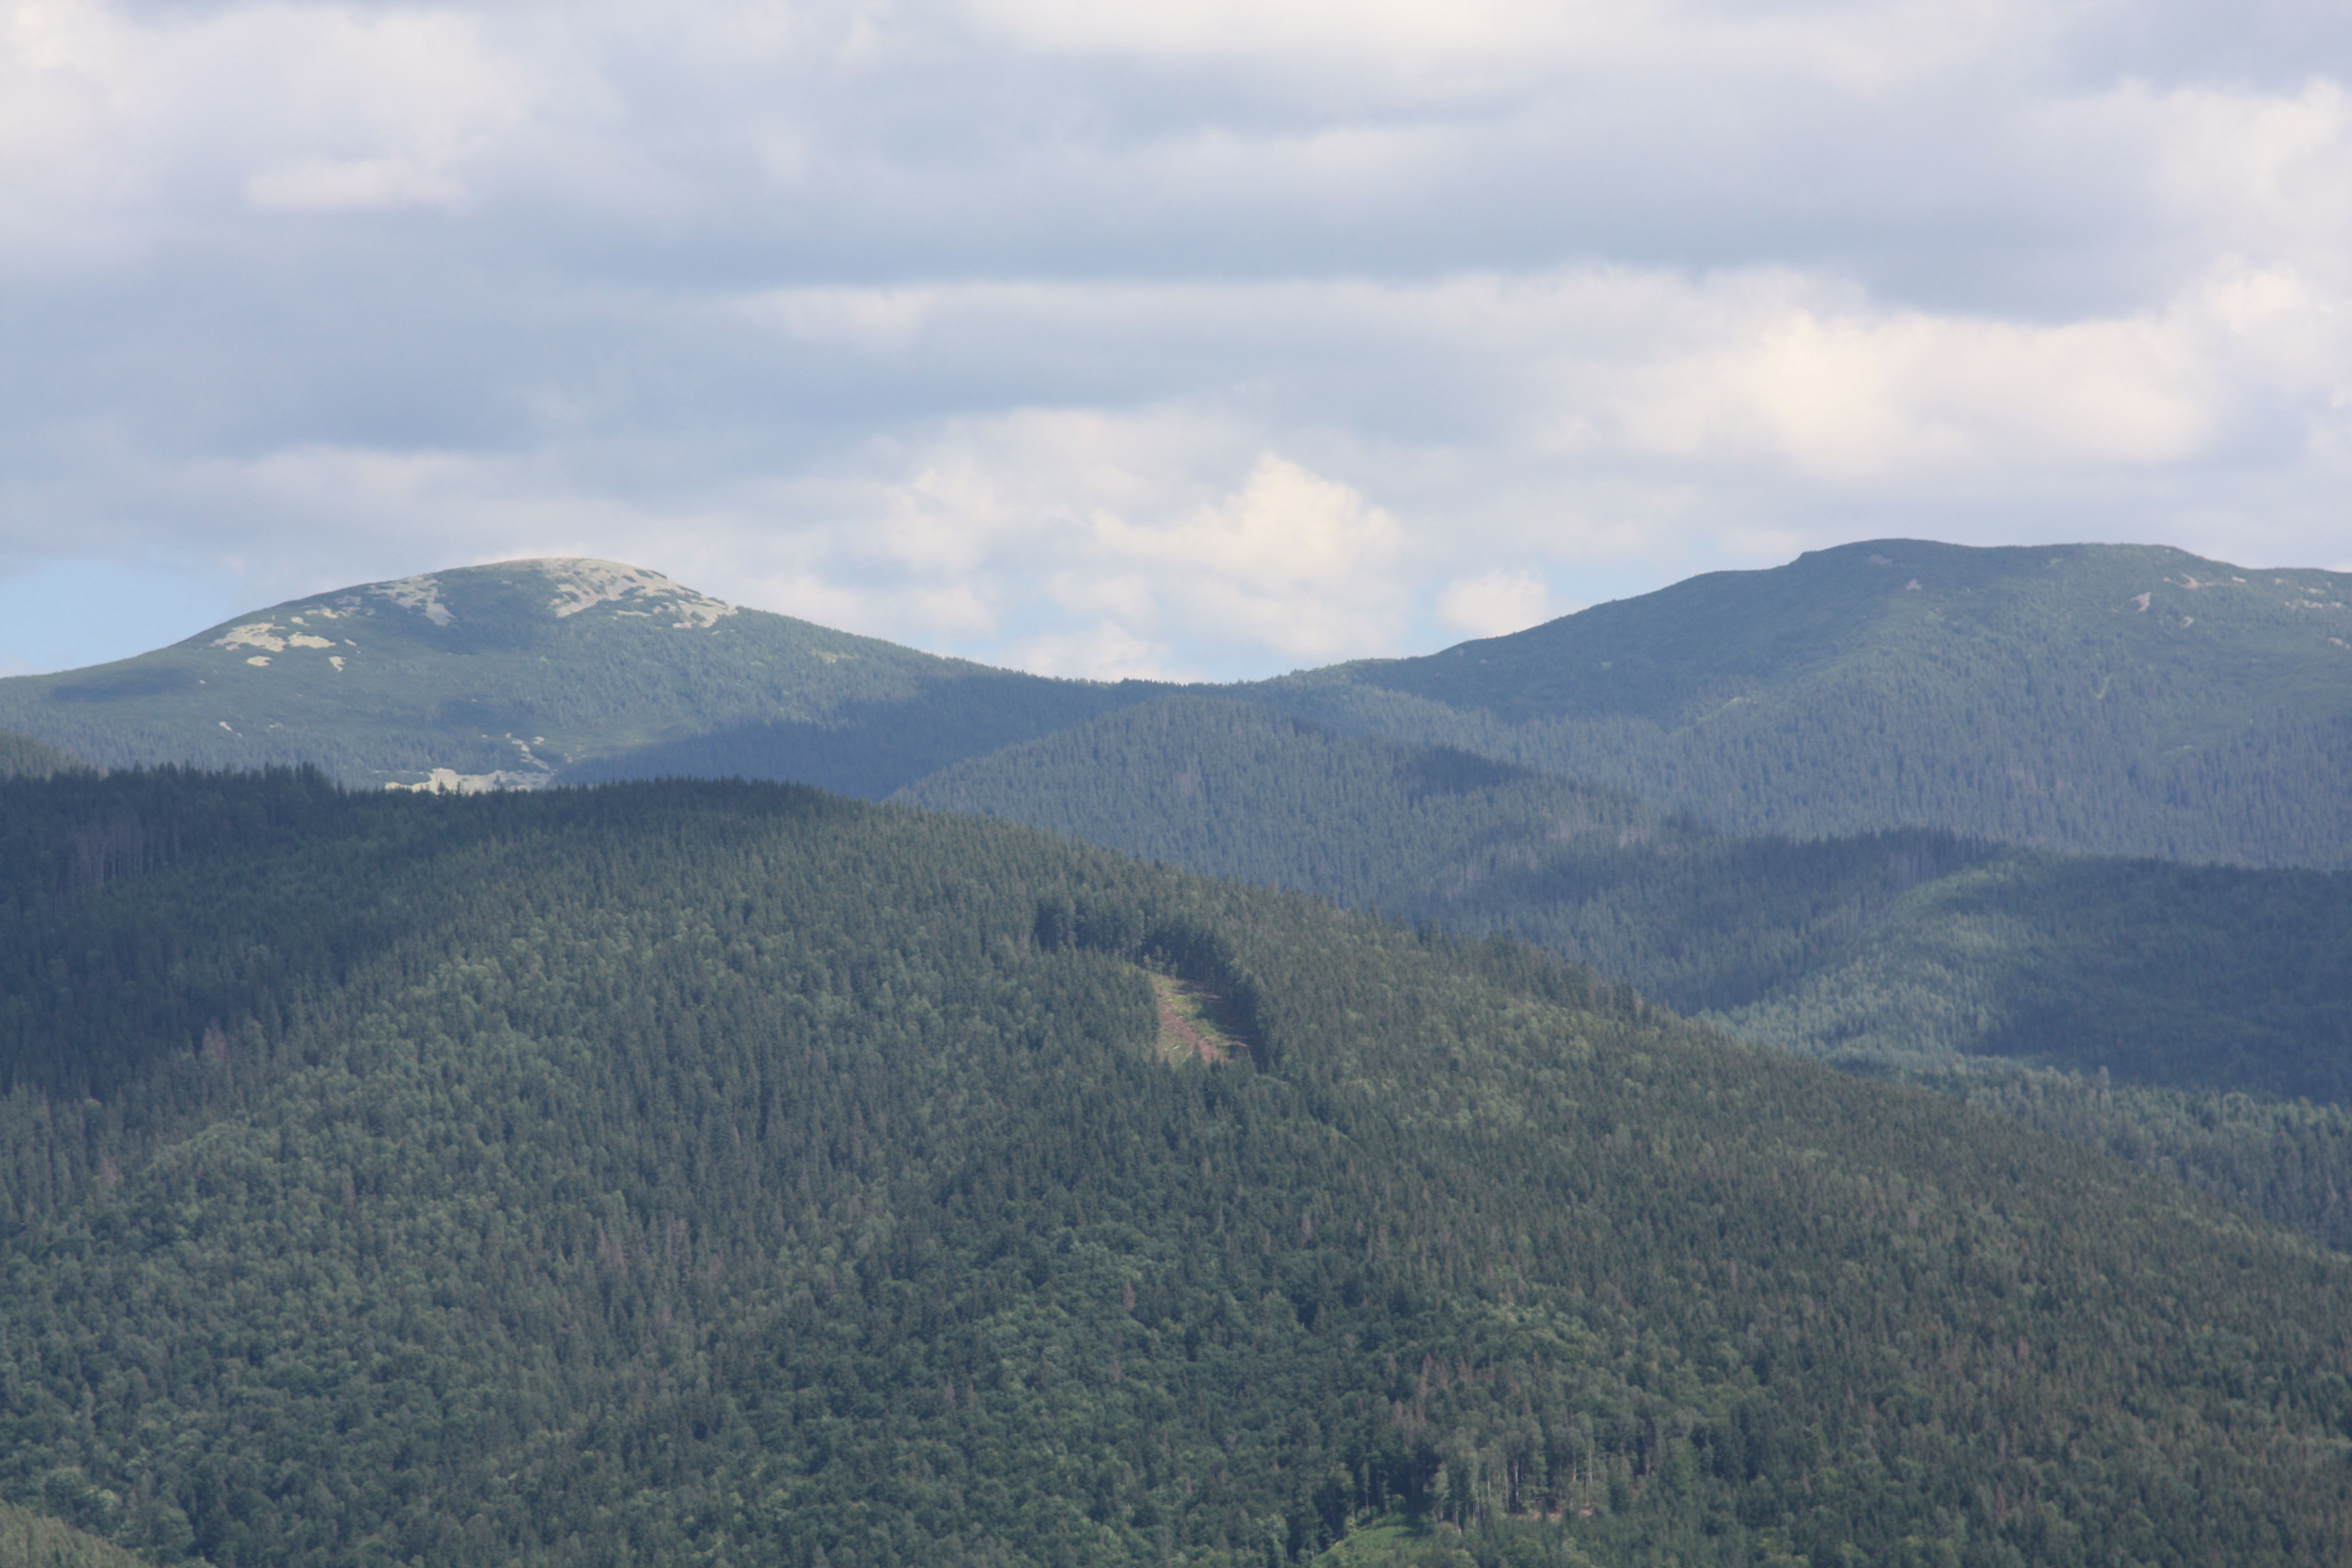 Посередині фото можна бачити вирубку. А на вершині ліворуч ліс не росте через цілком природні причини. Адже вершина та схили гори вкриті щільним шаром каміння. Це типова картина для цього регіону українських карпат, що зветься Ґорґа́нами